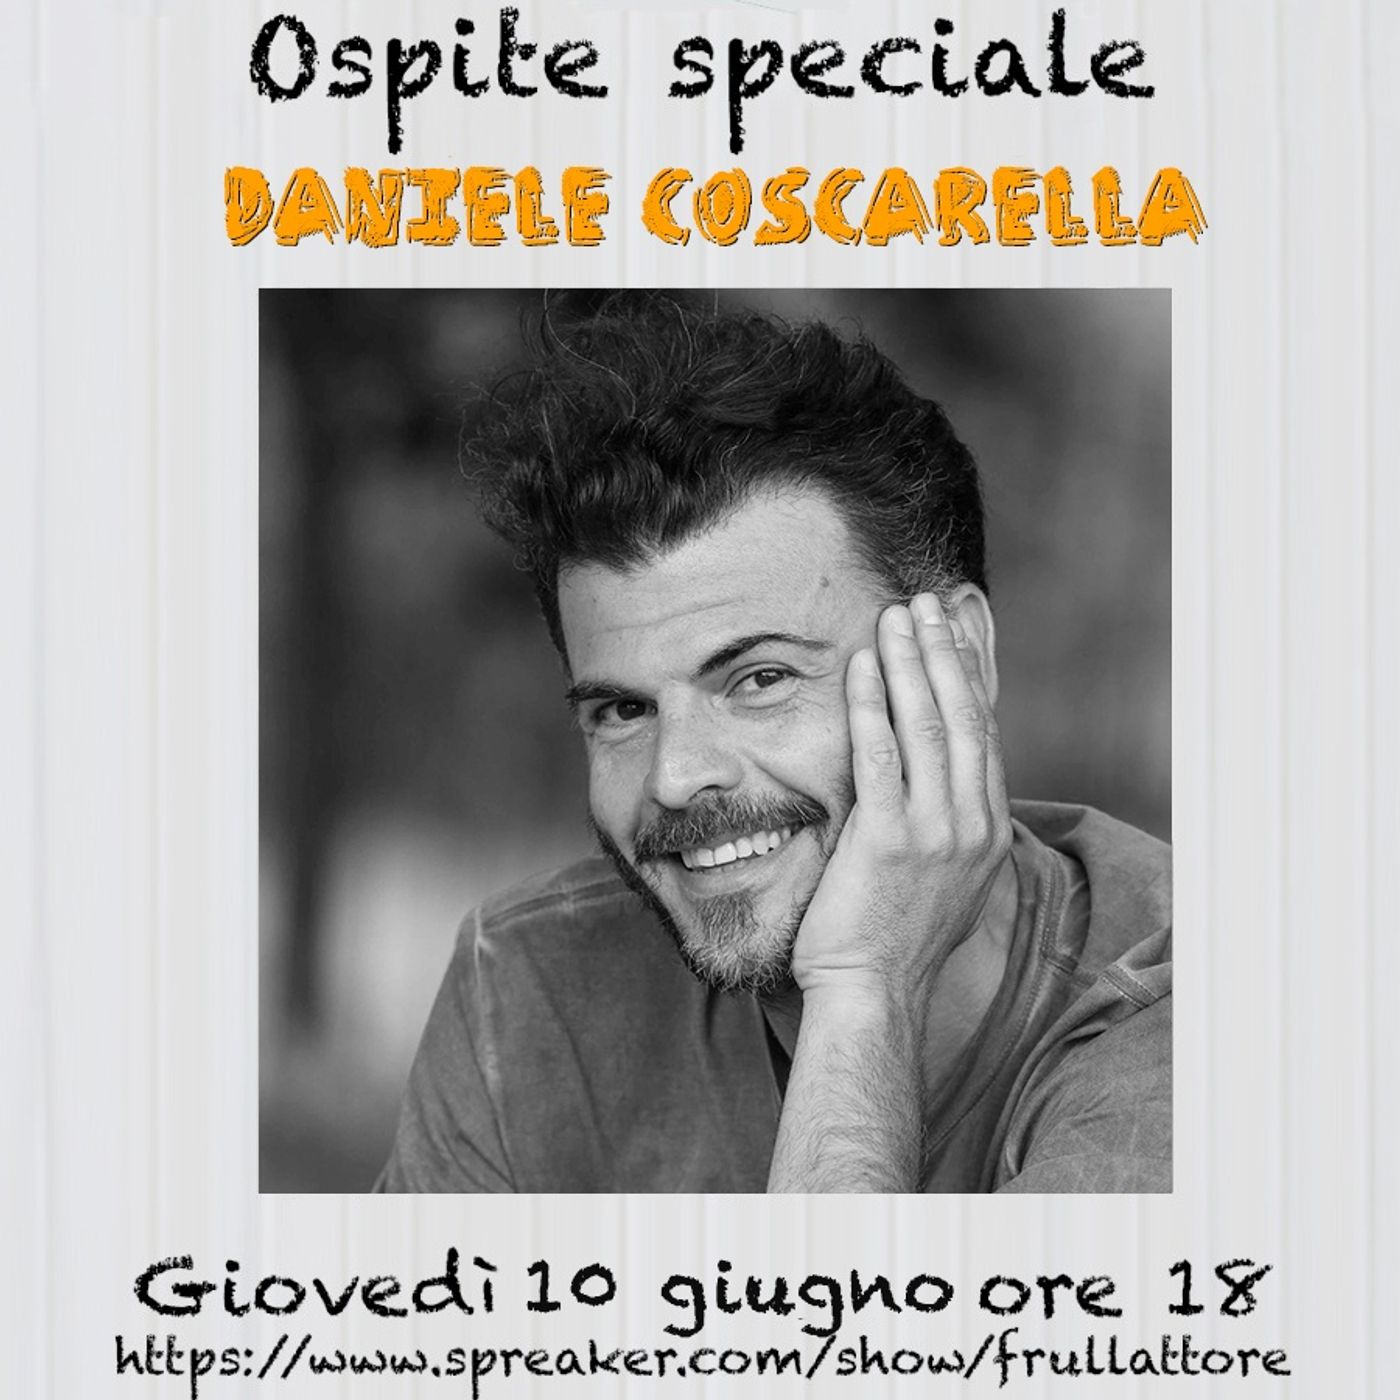 Ep. 15 - Le birre con Daniele Coscarella!